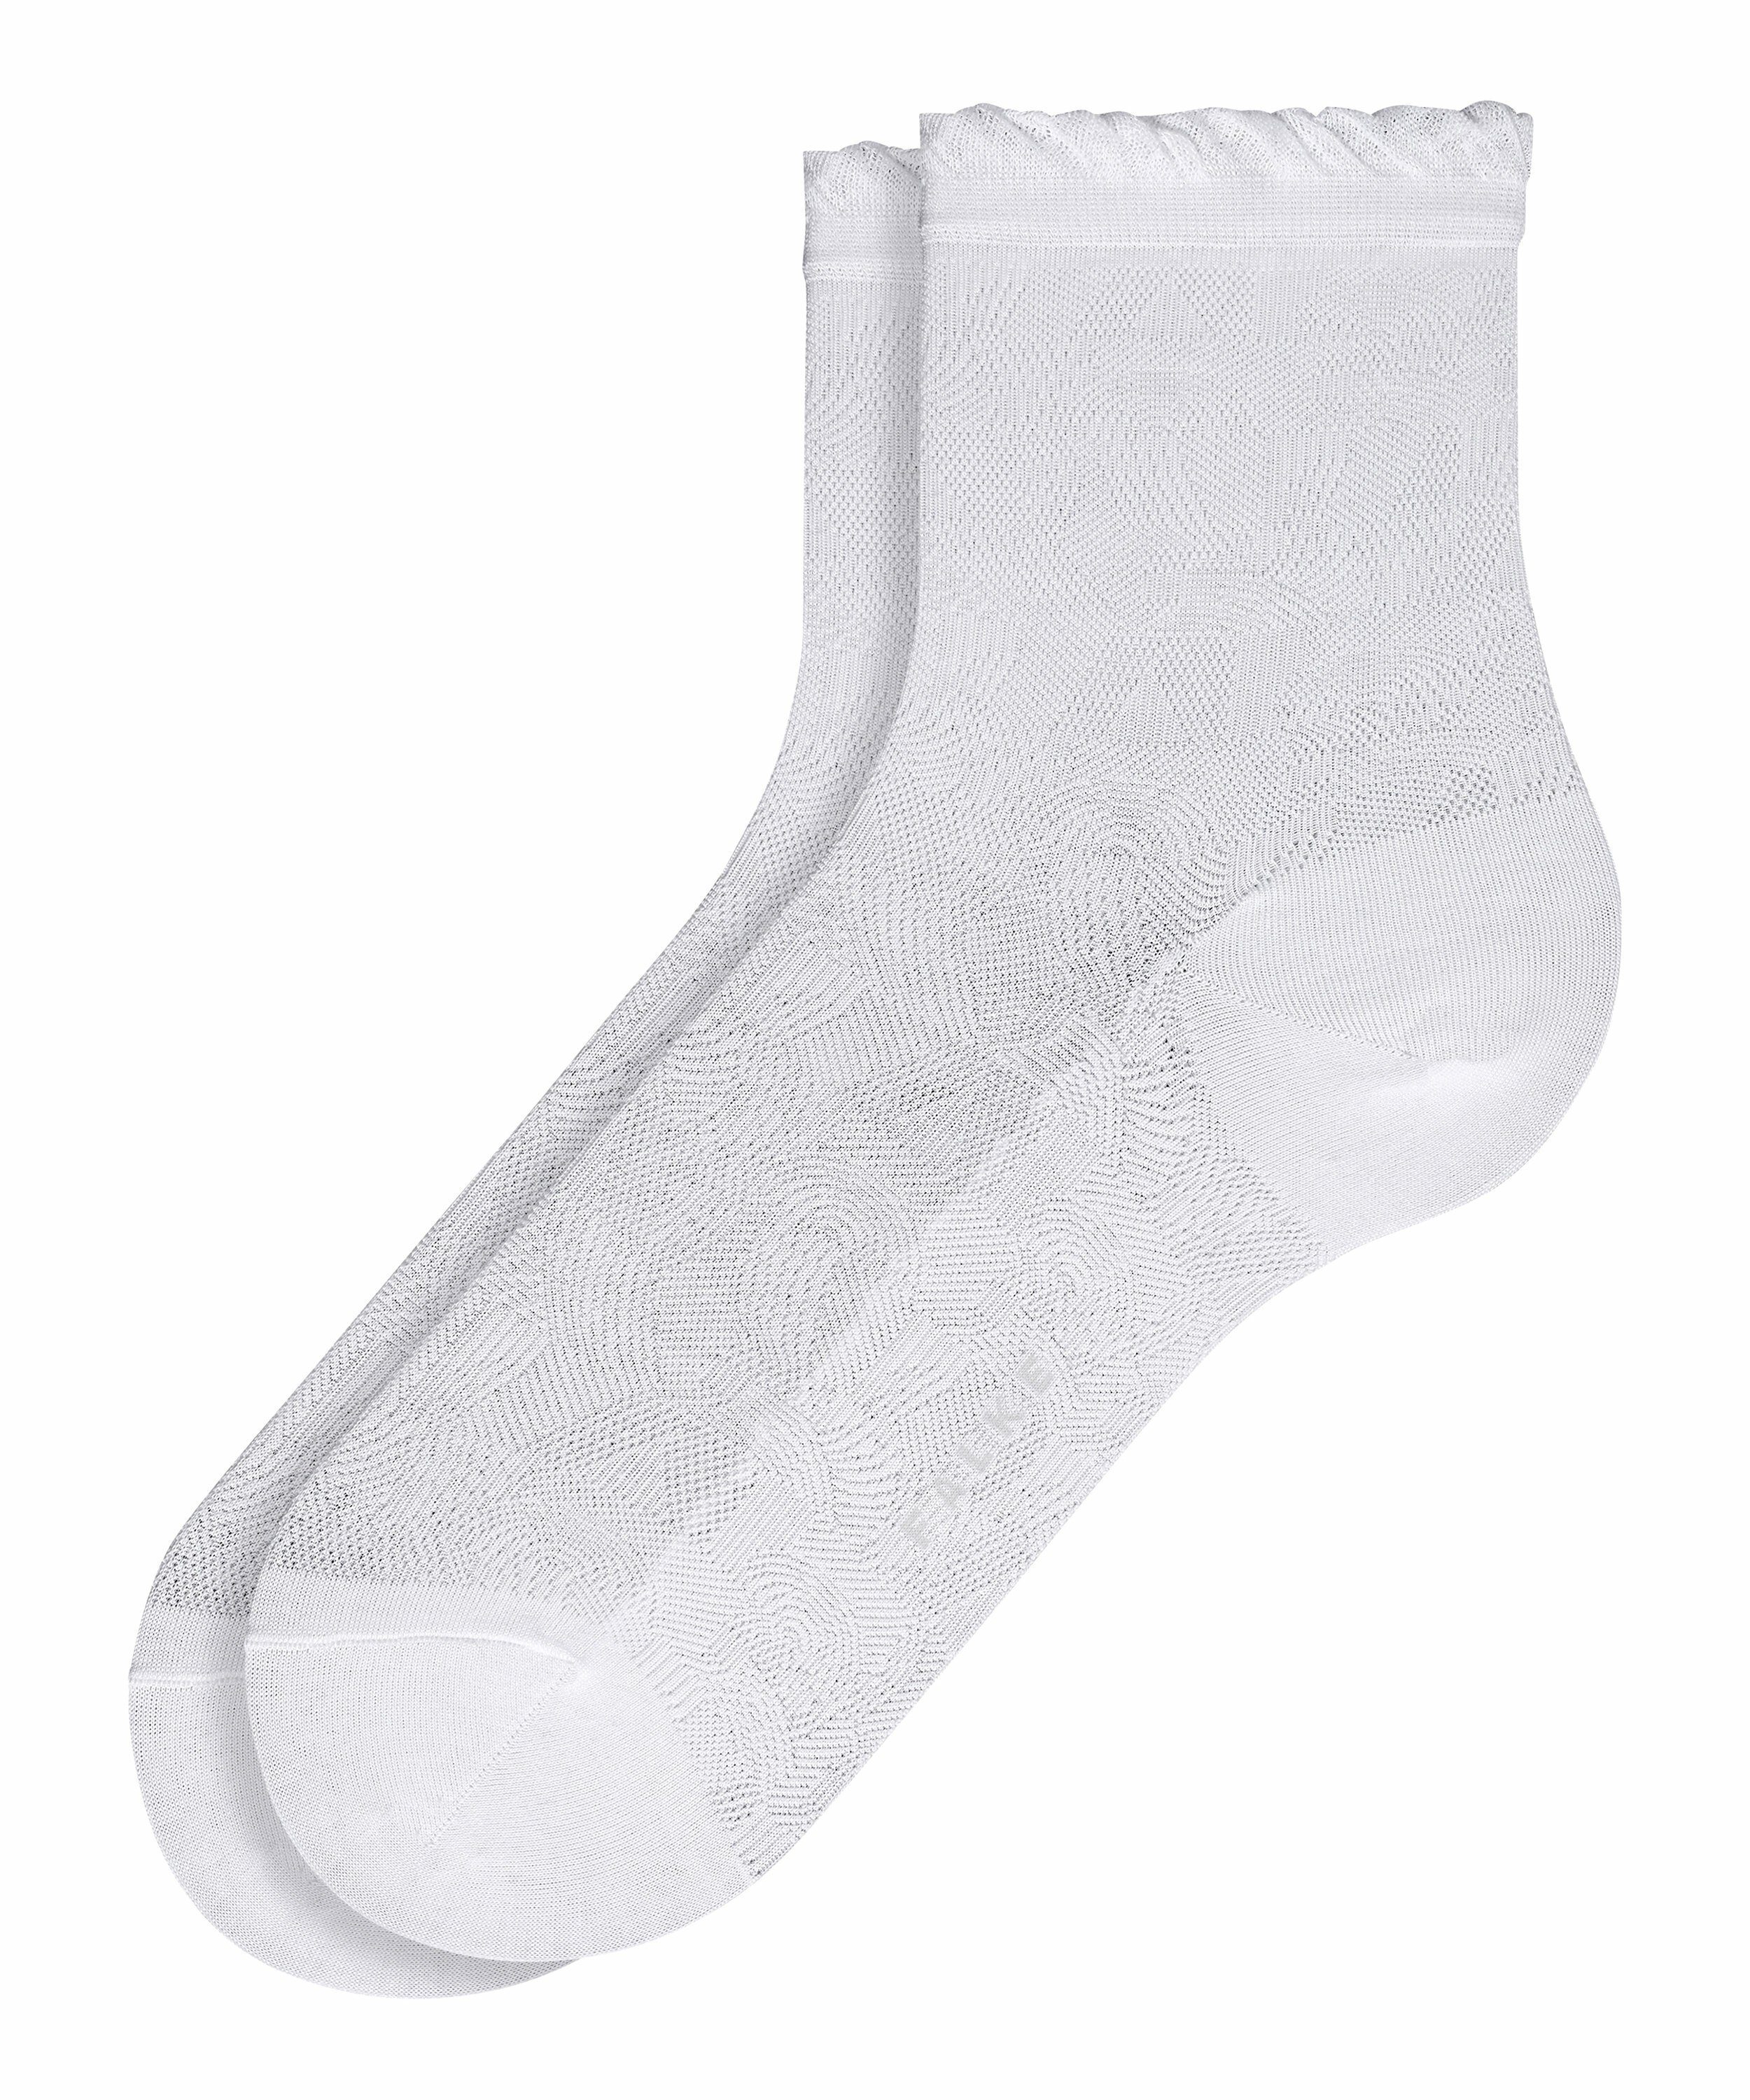 Noisy (1-Paar) white FALKE Floor Socken (2000)